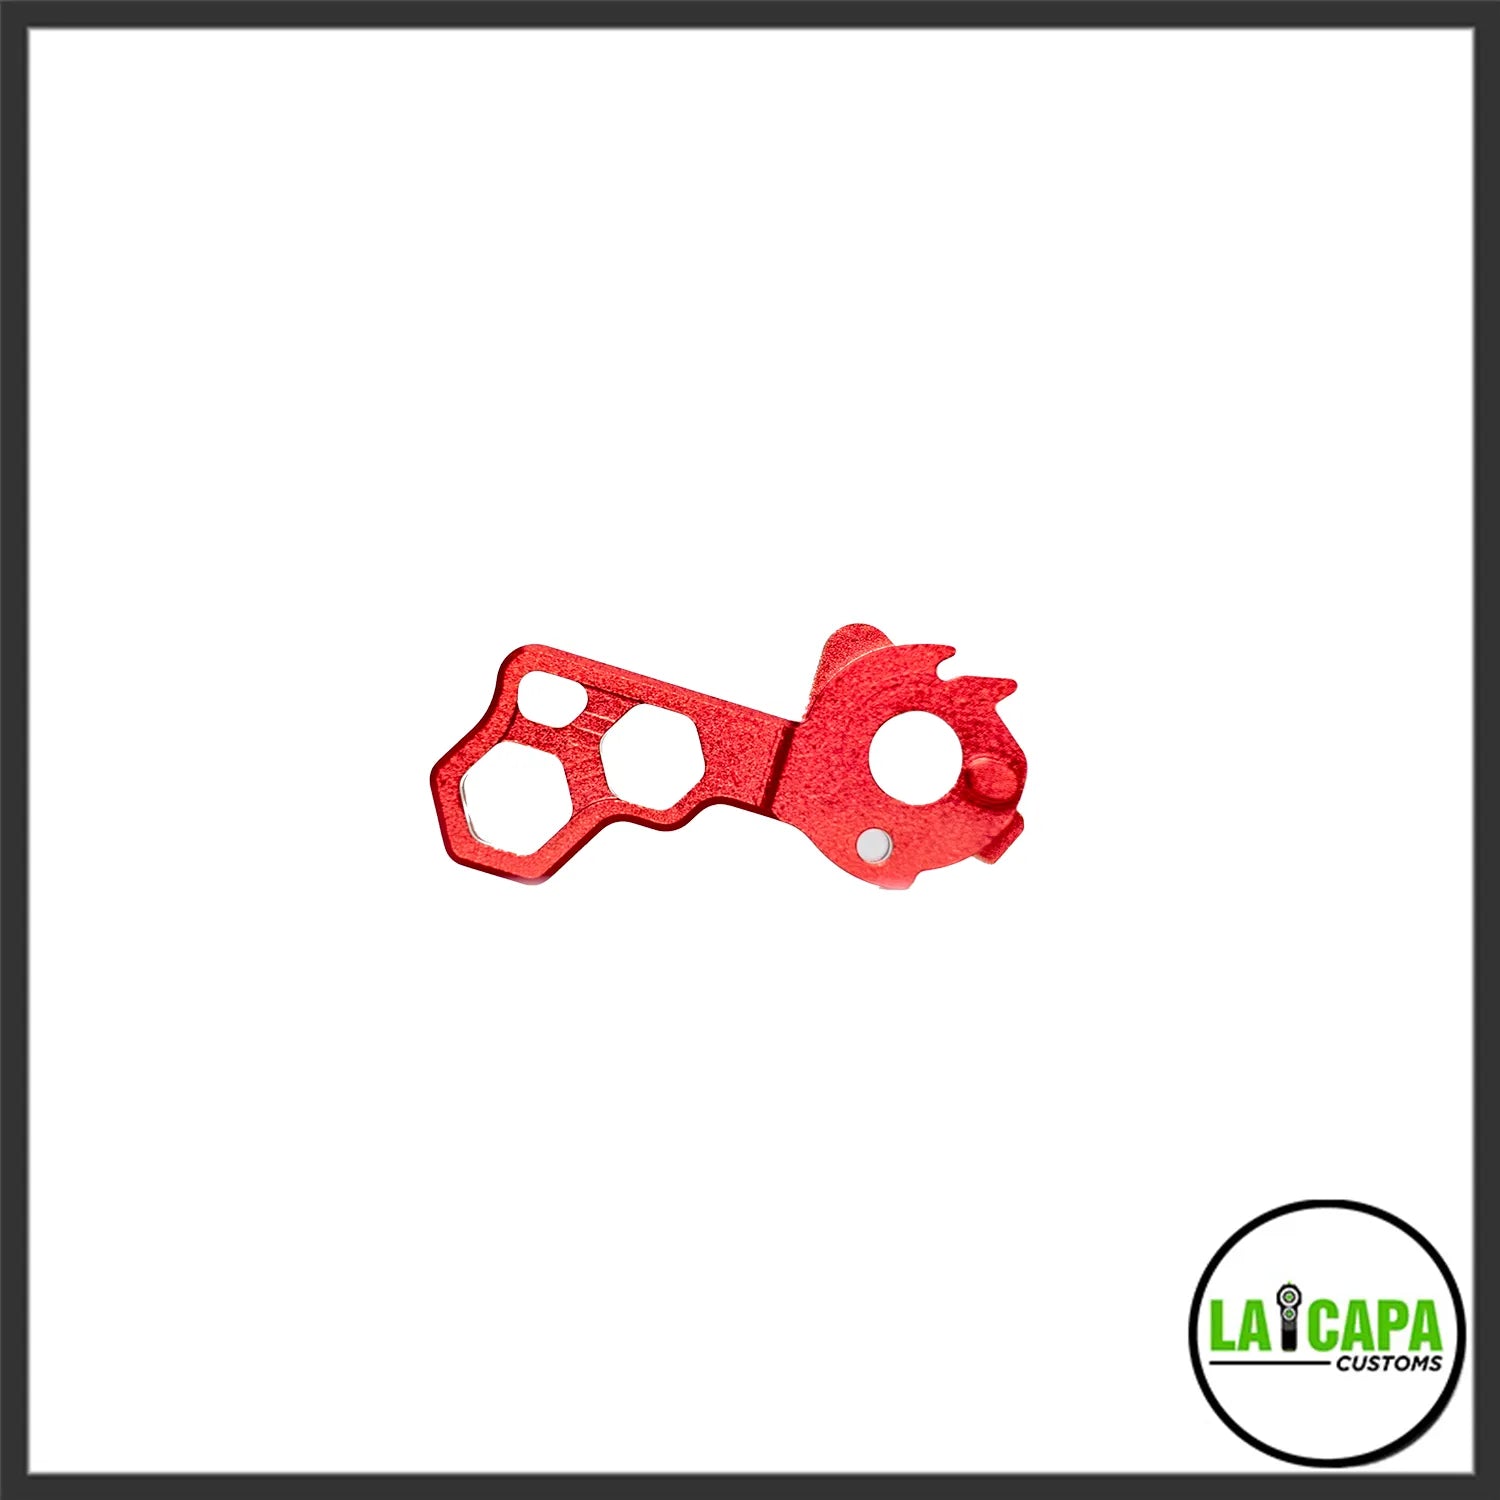 LA Capa Customs “HIVE” Duralumin Hammer for Hi Capa - Red